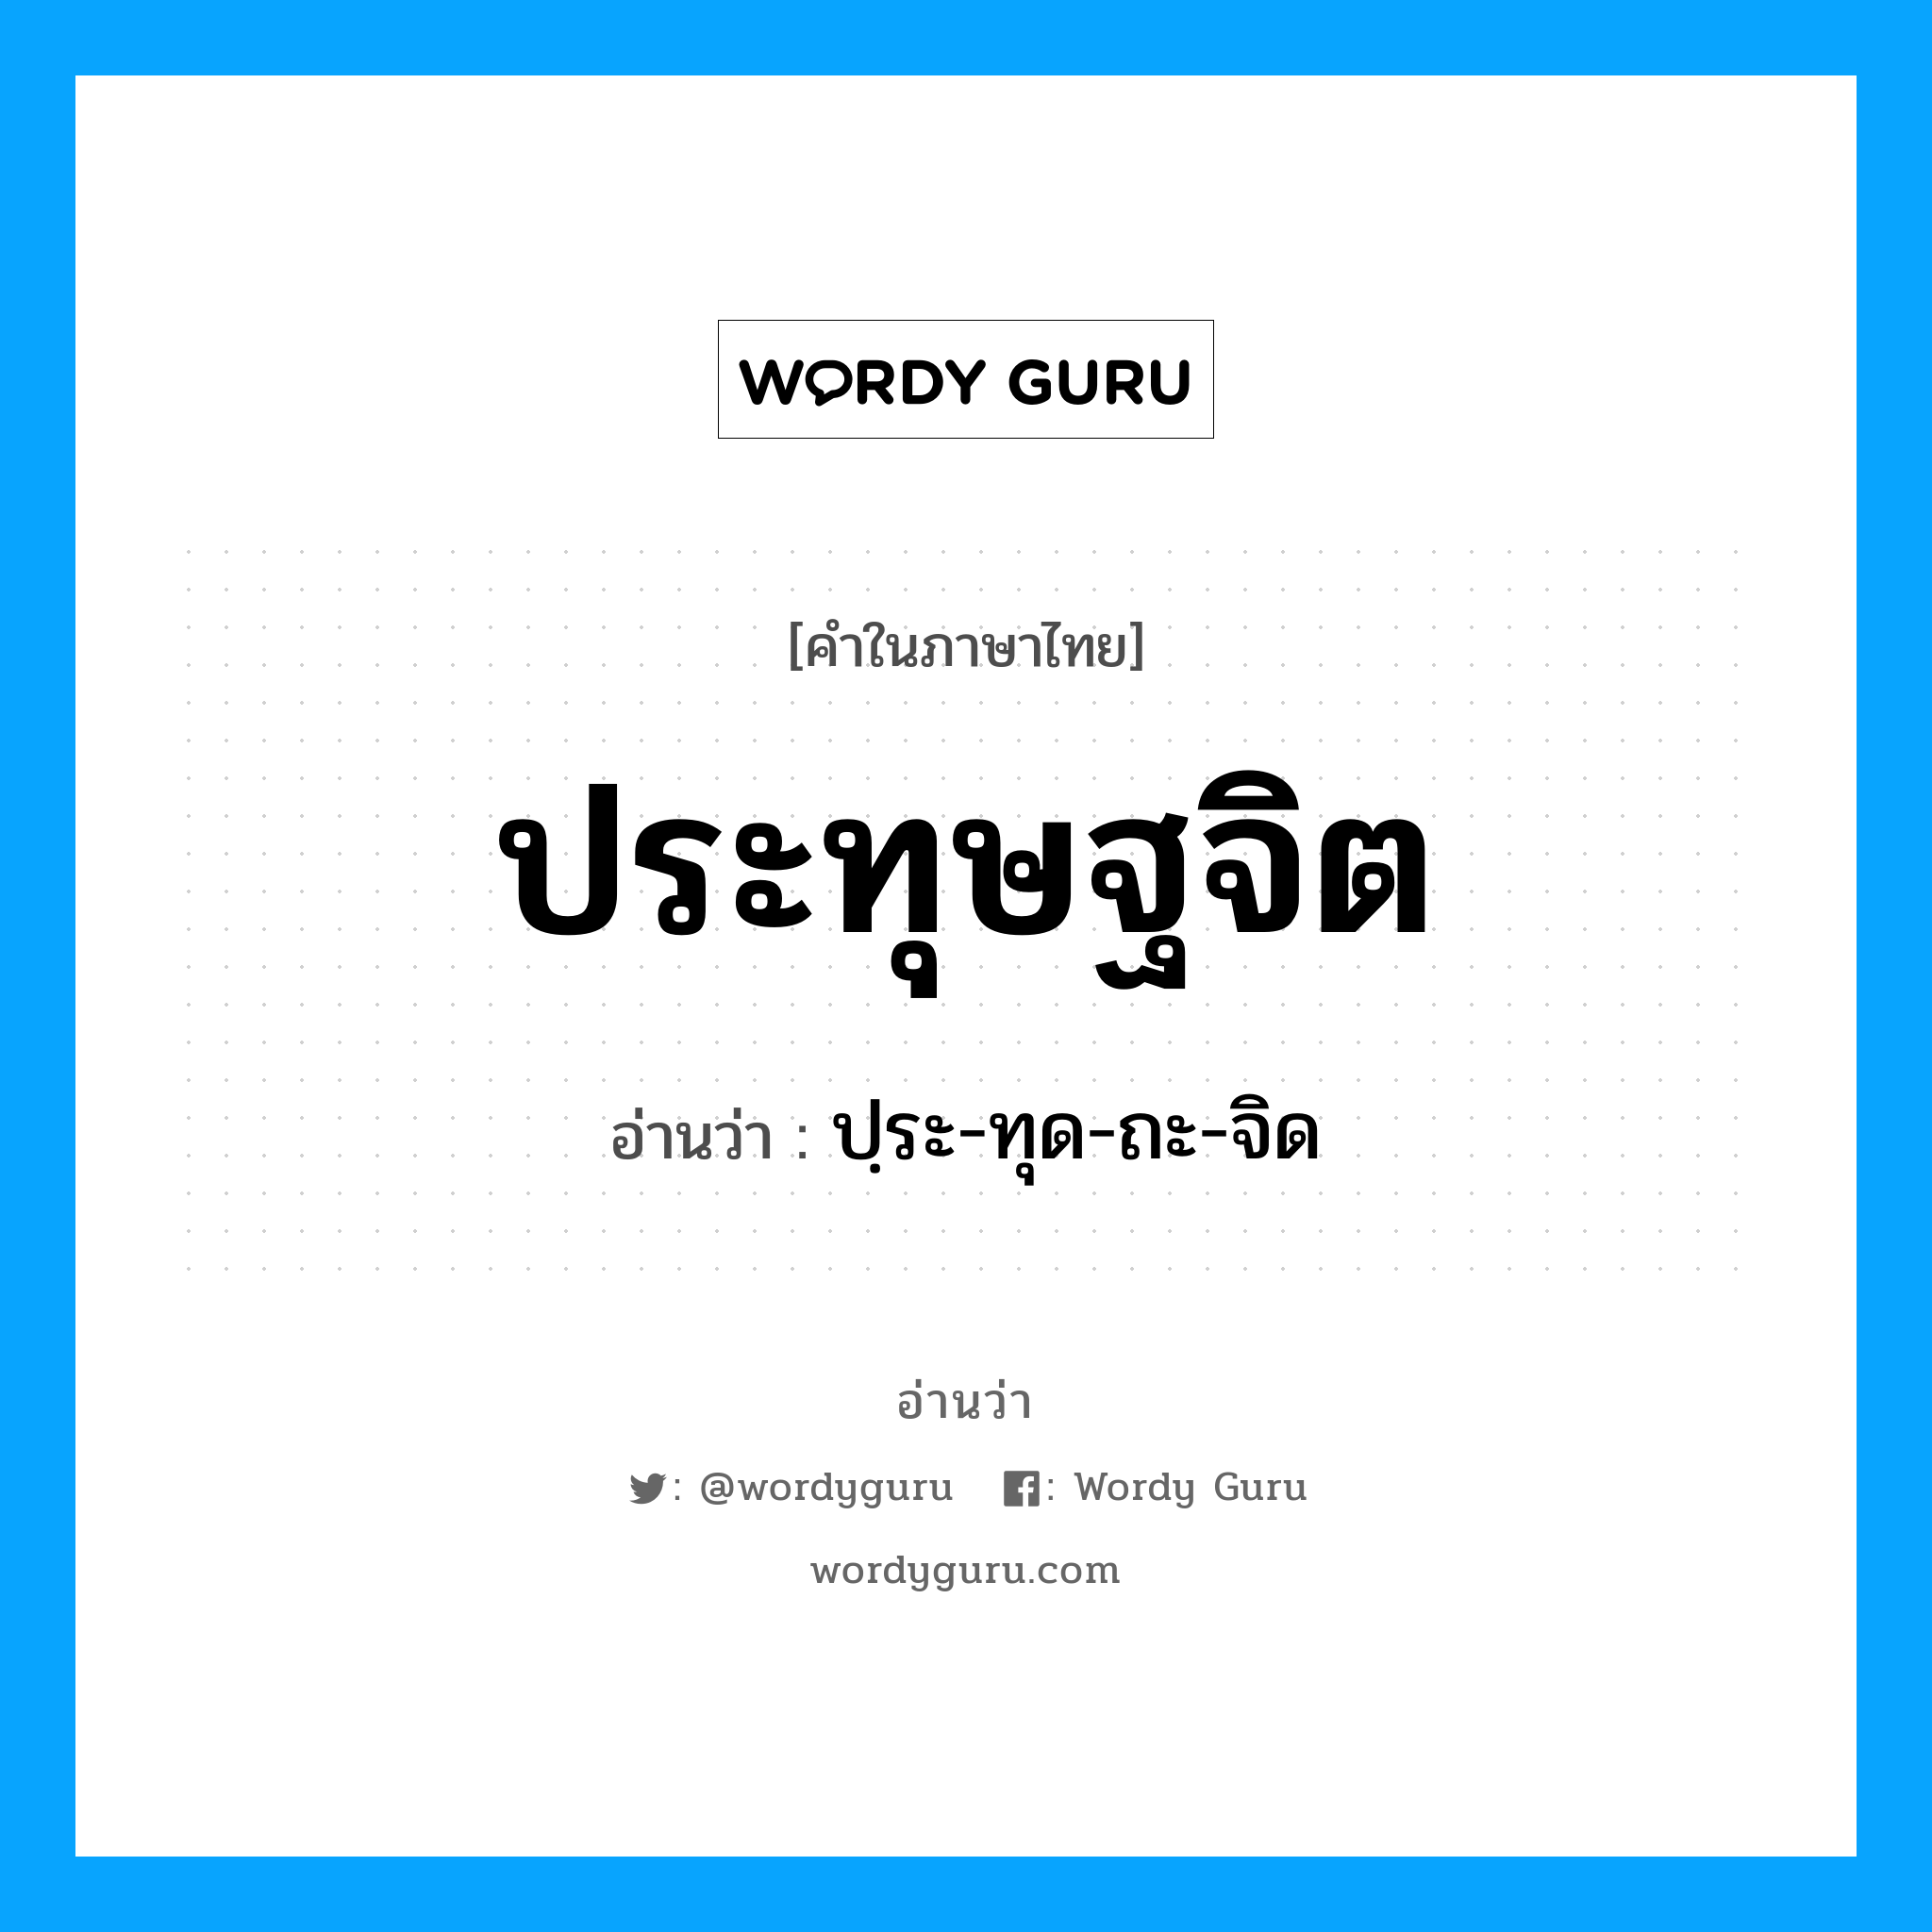 ปฺระ-ทุด-ถะ-จิด เป็นคำอ่านของคำไหน?, คำในภาษาไทย ปฺระ-ทุด-ถะ-จิด อ่านว่า ประทุษฐจิต